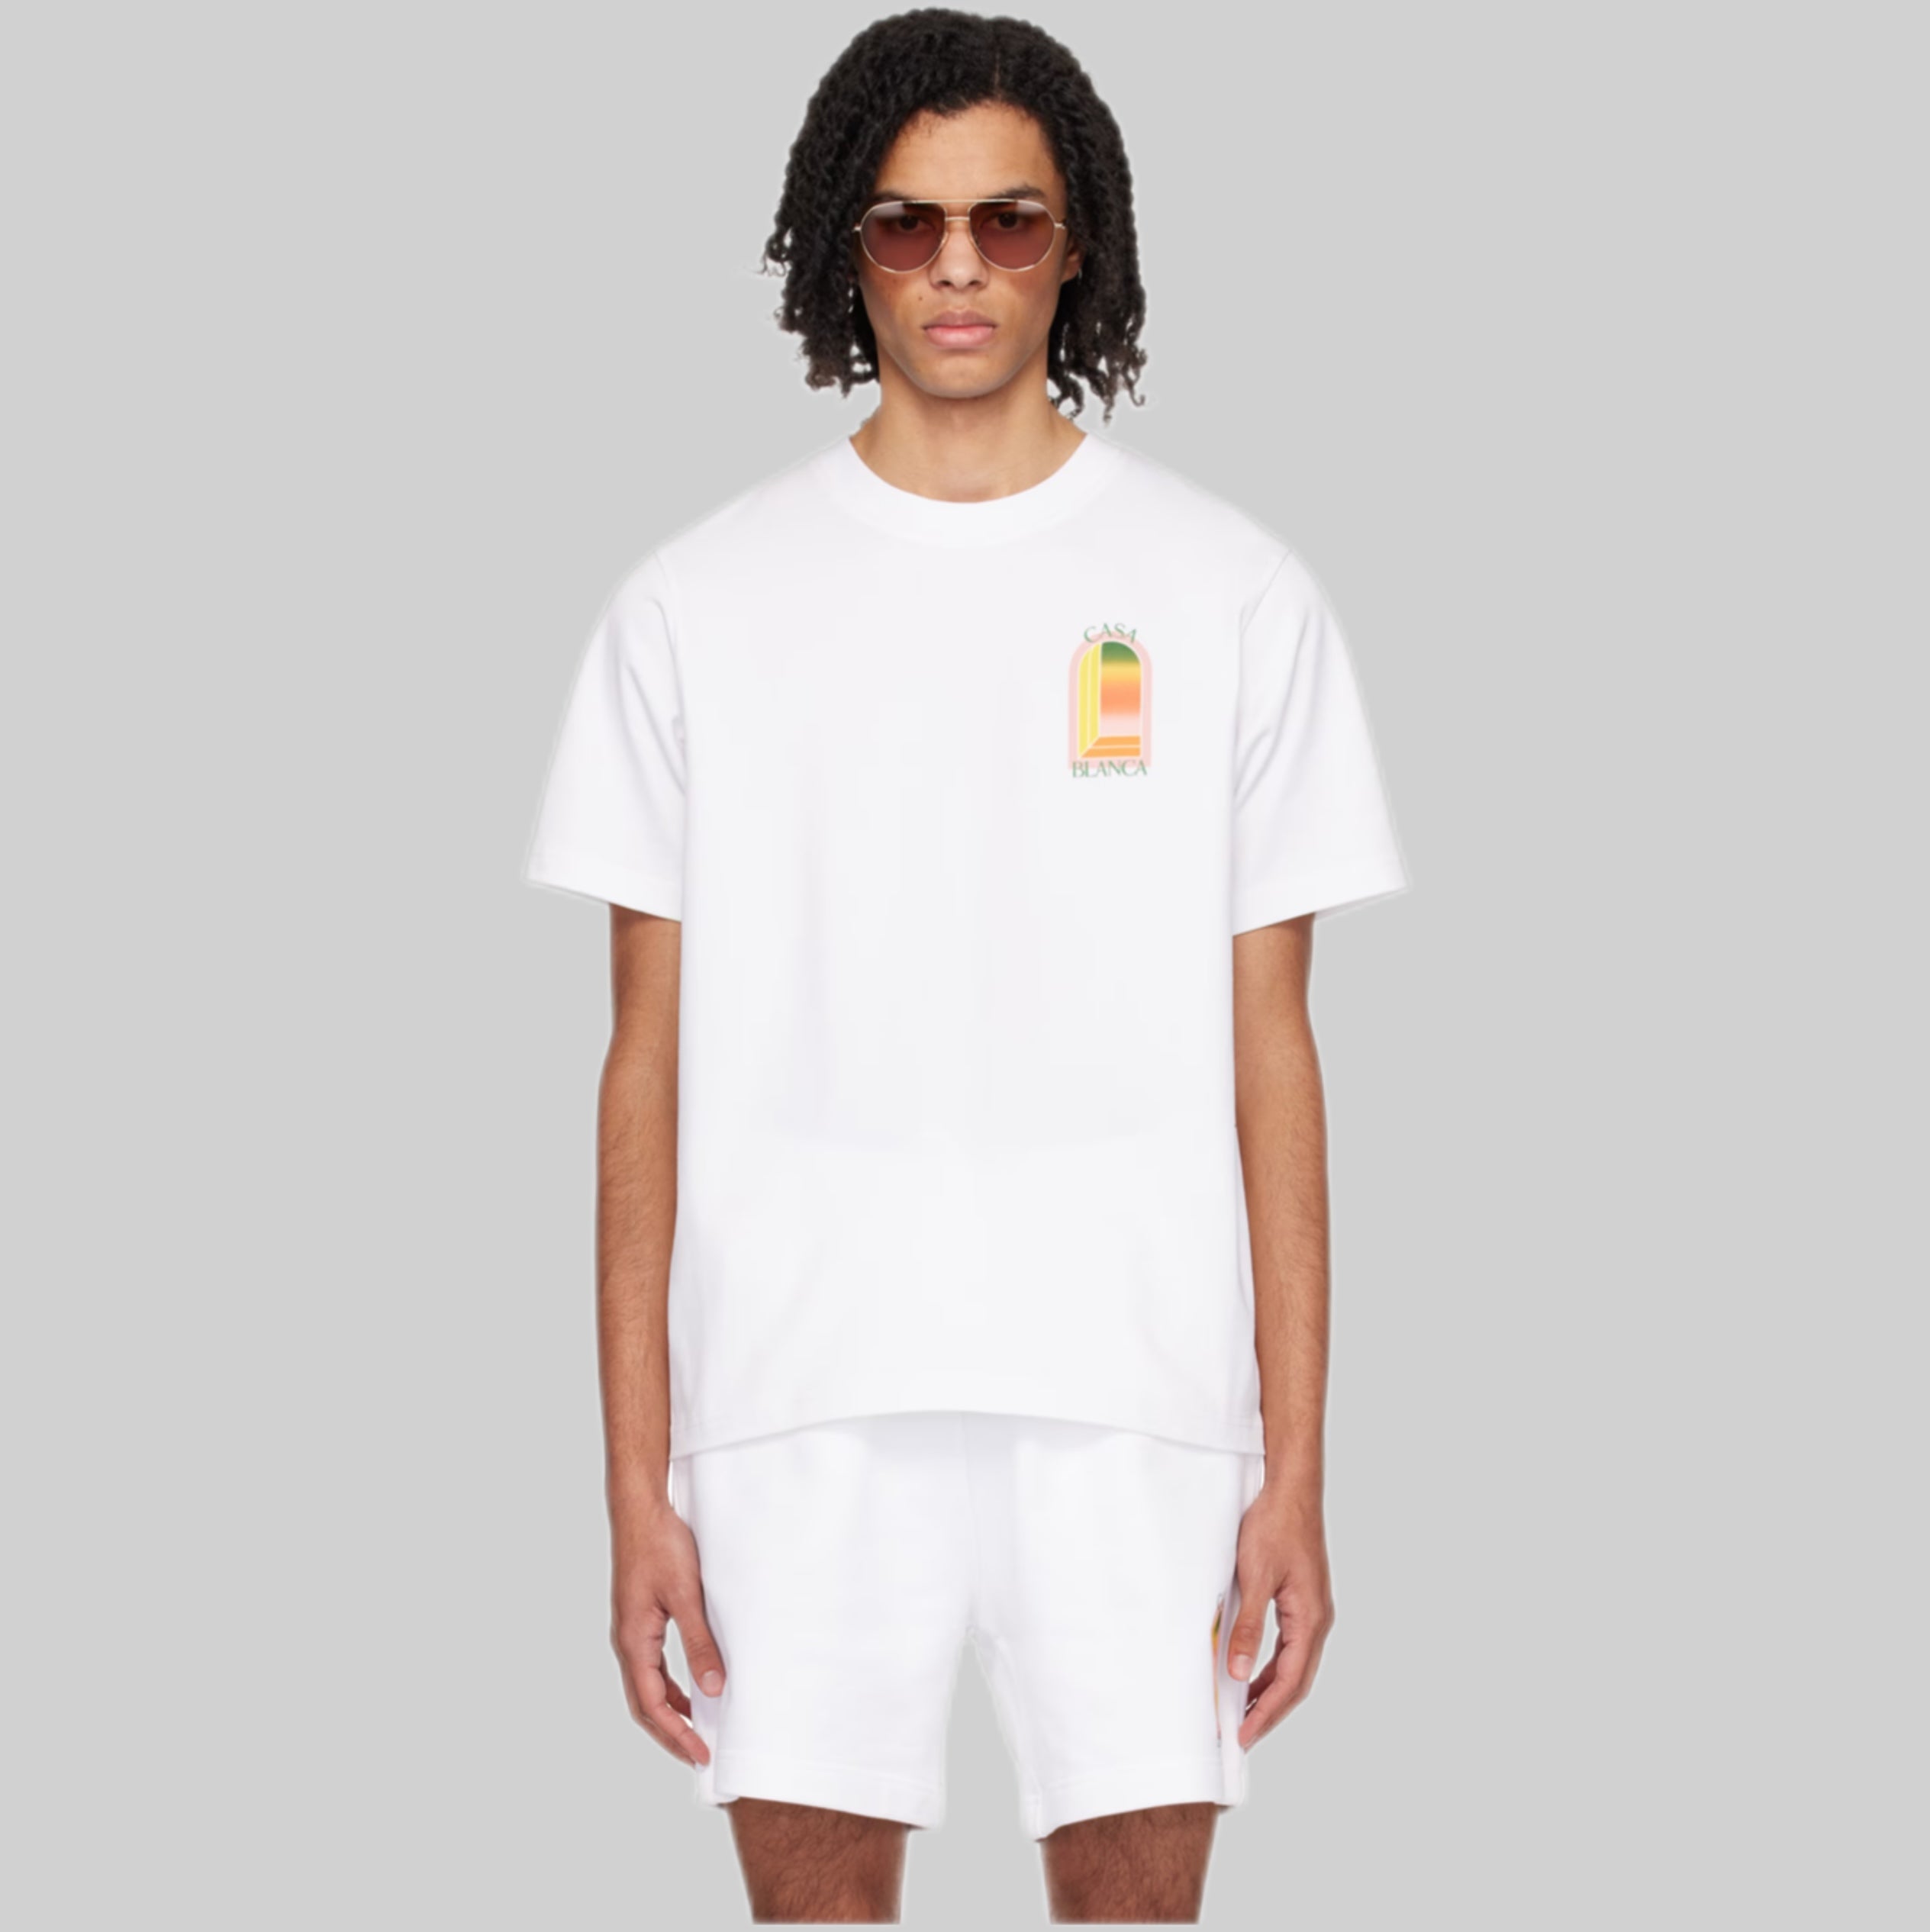 CASABLANCA t-shirt, white, men, frontside, model